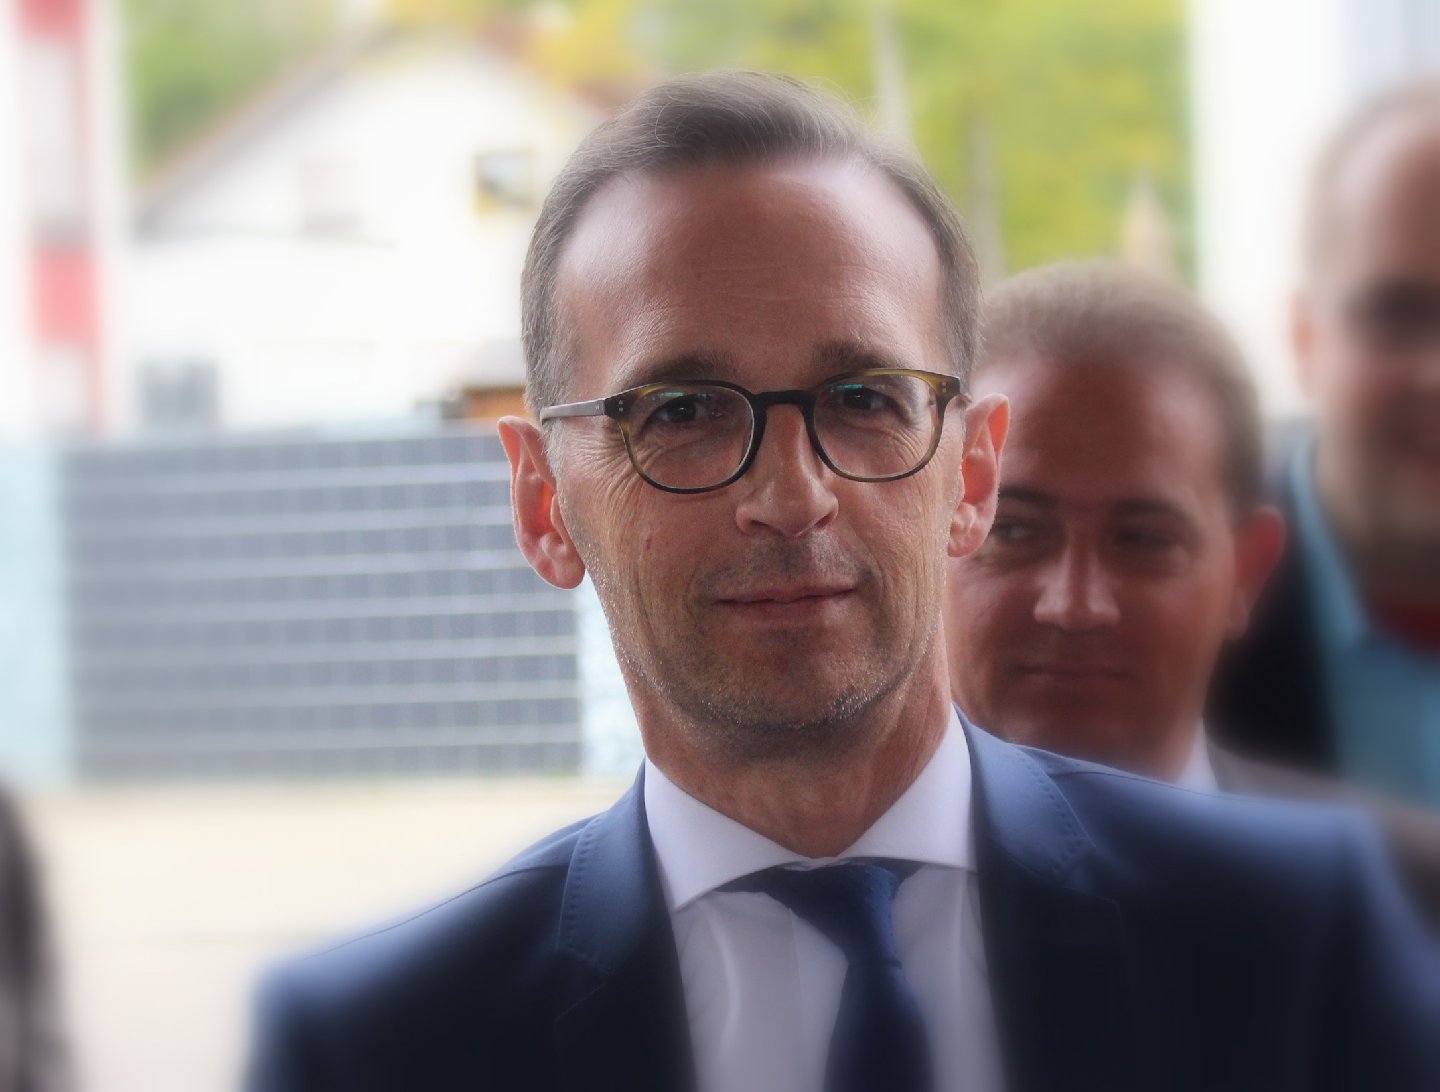 Justizminister Heiko Maas (SPD). Foto: pfalz-express.de/Licht